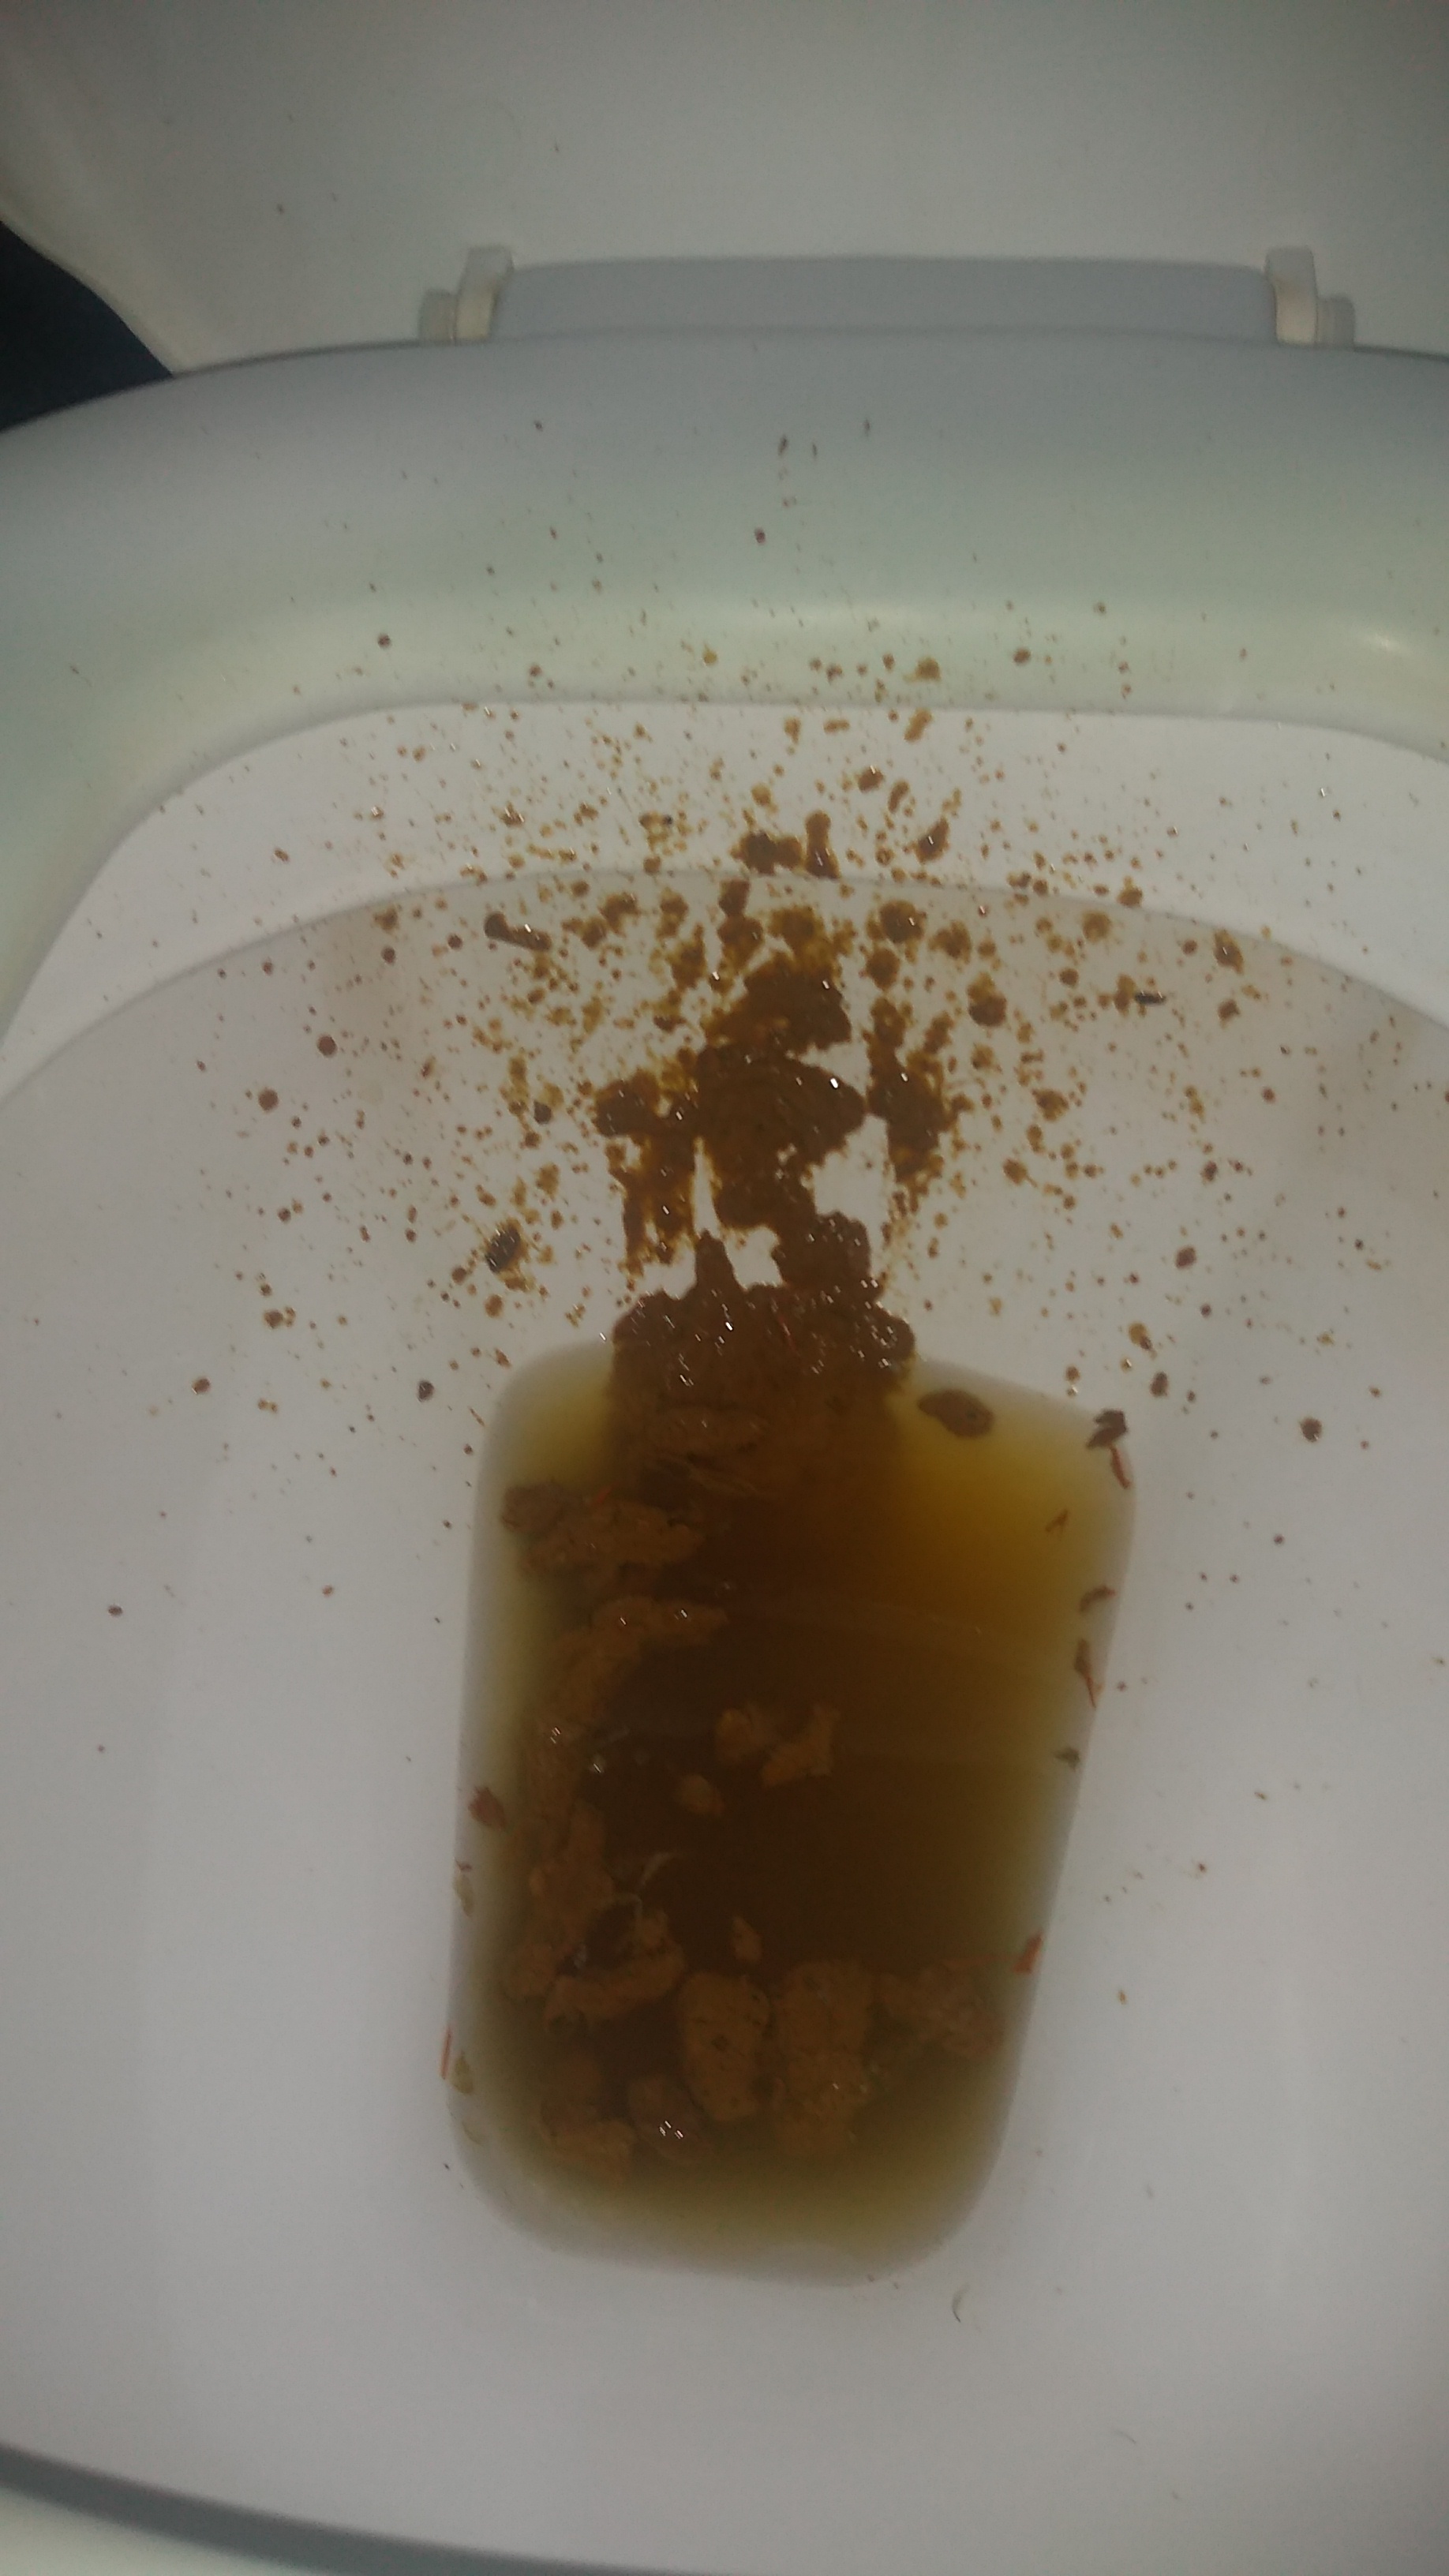 Epic diarrhea over the toilet